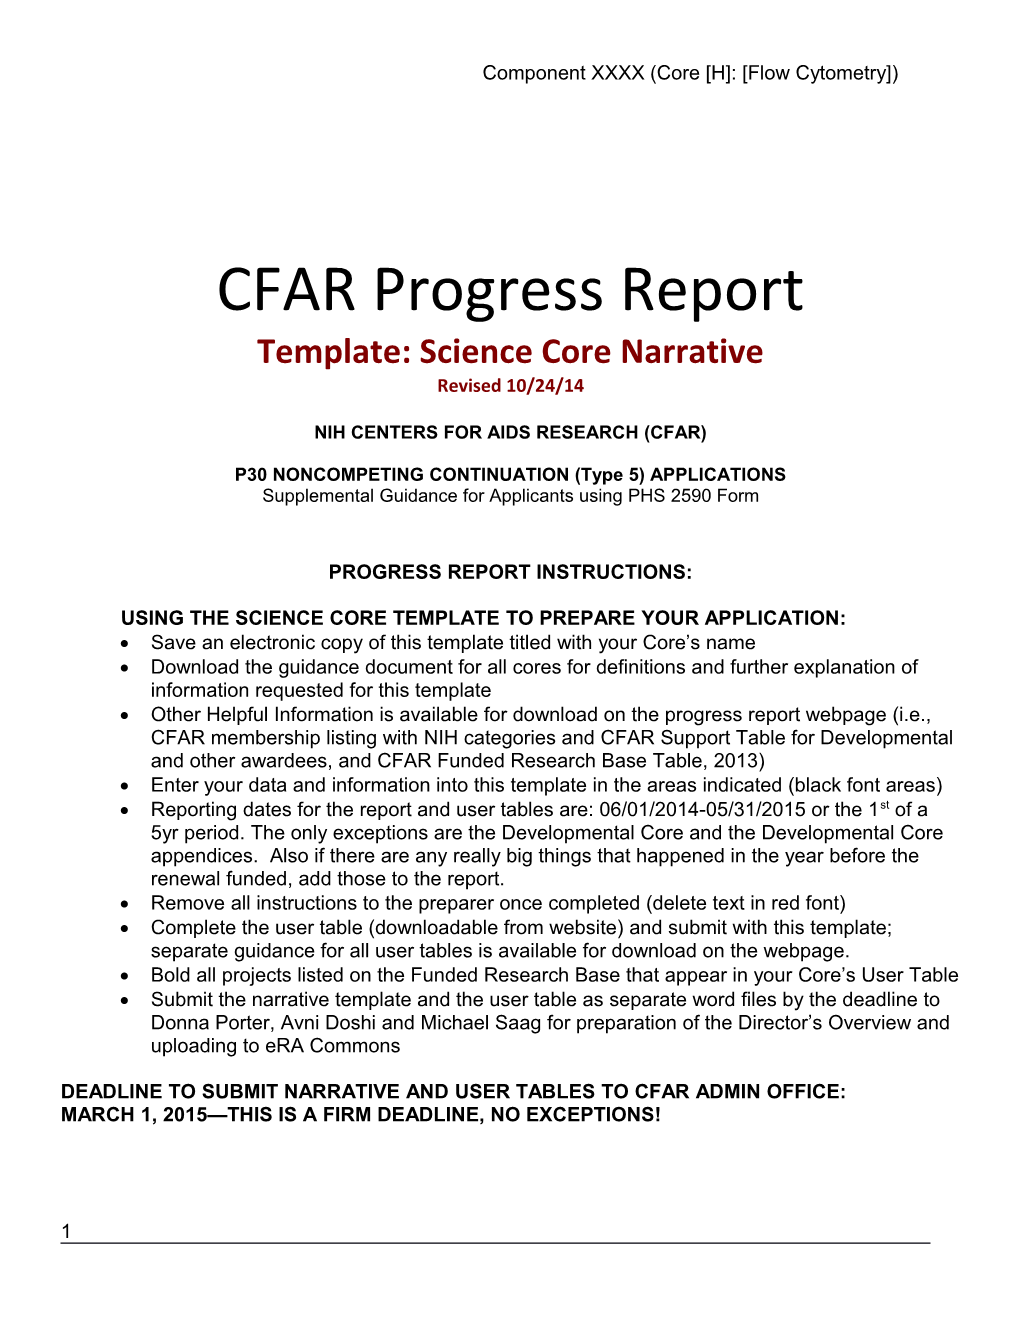 CFAR Progress Report